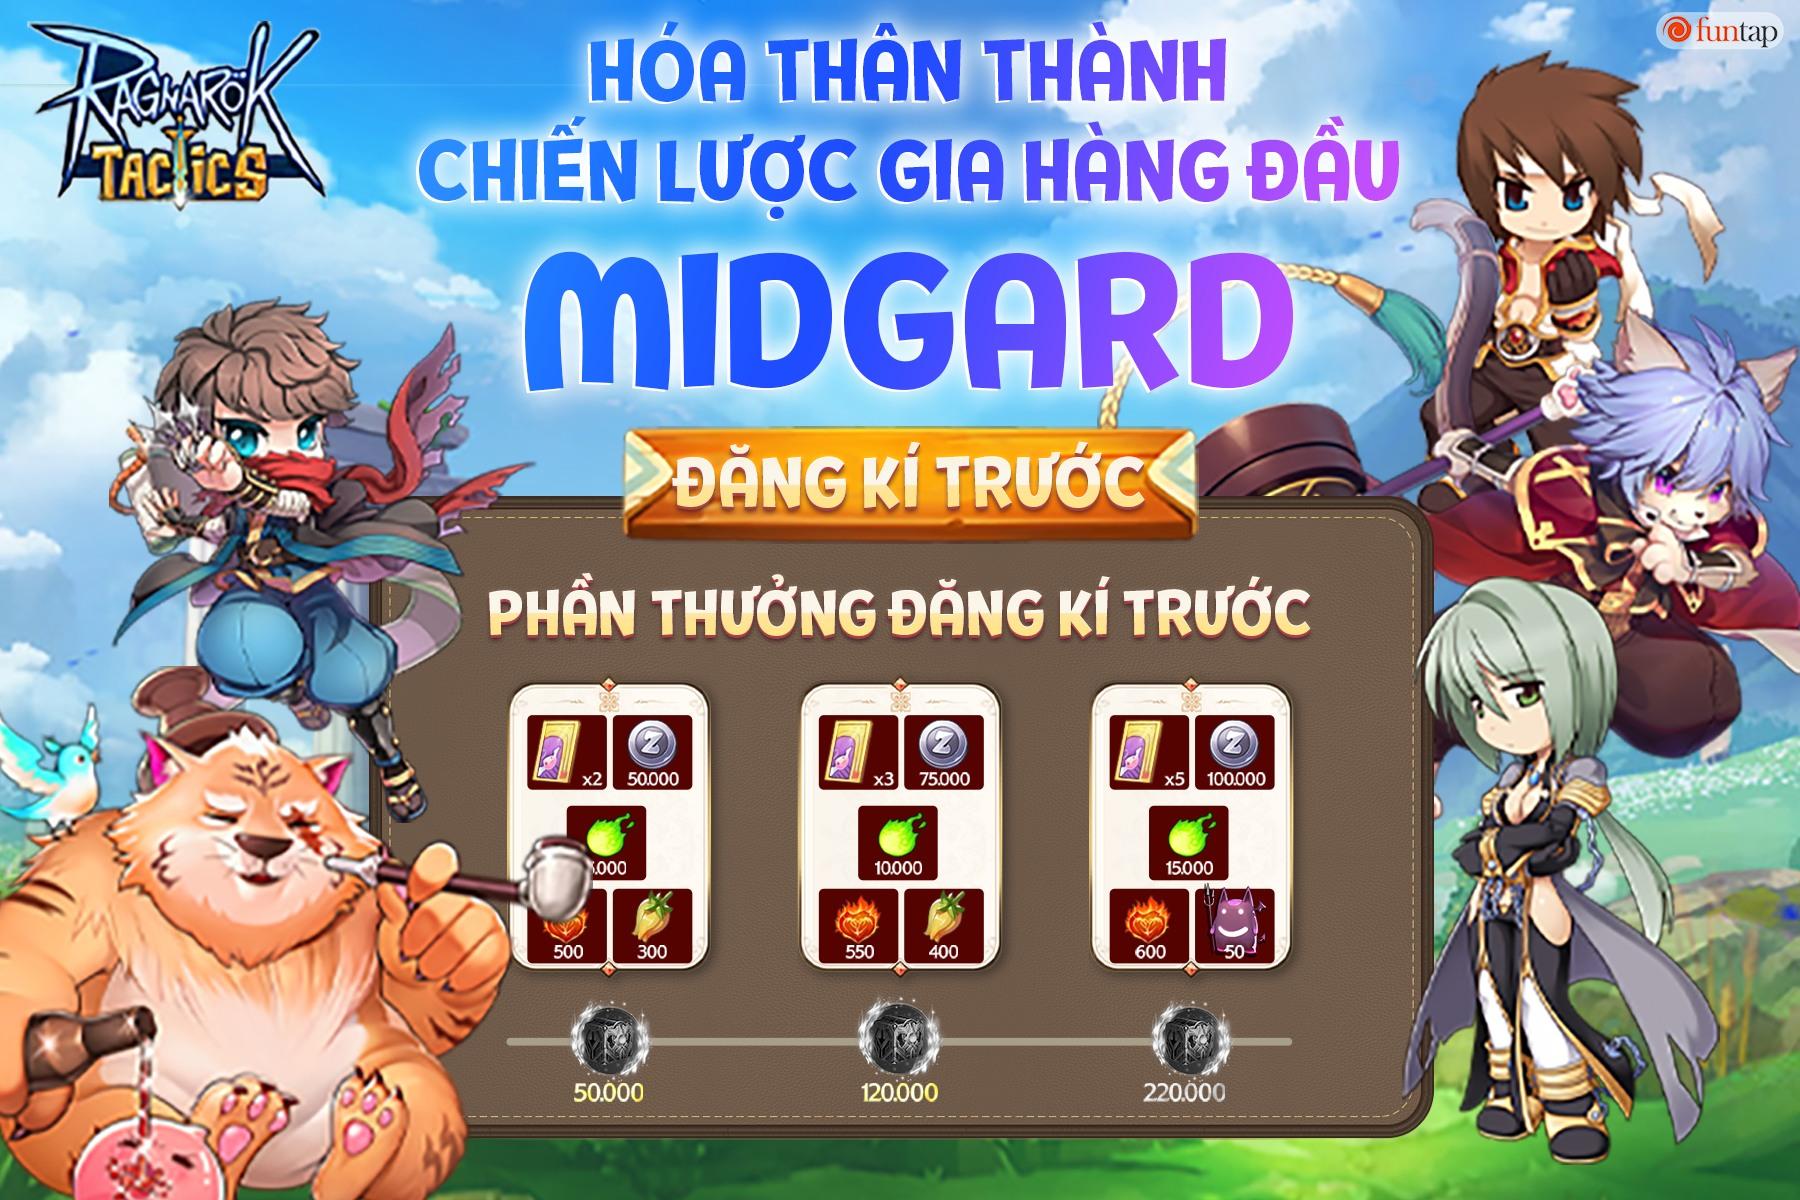 Ragnarok Tactics chuẩn bị được HH Games phát hành phiên bản tiếng Việt trong tháng 4